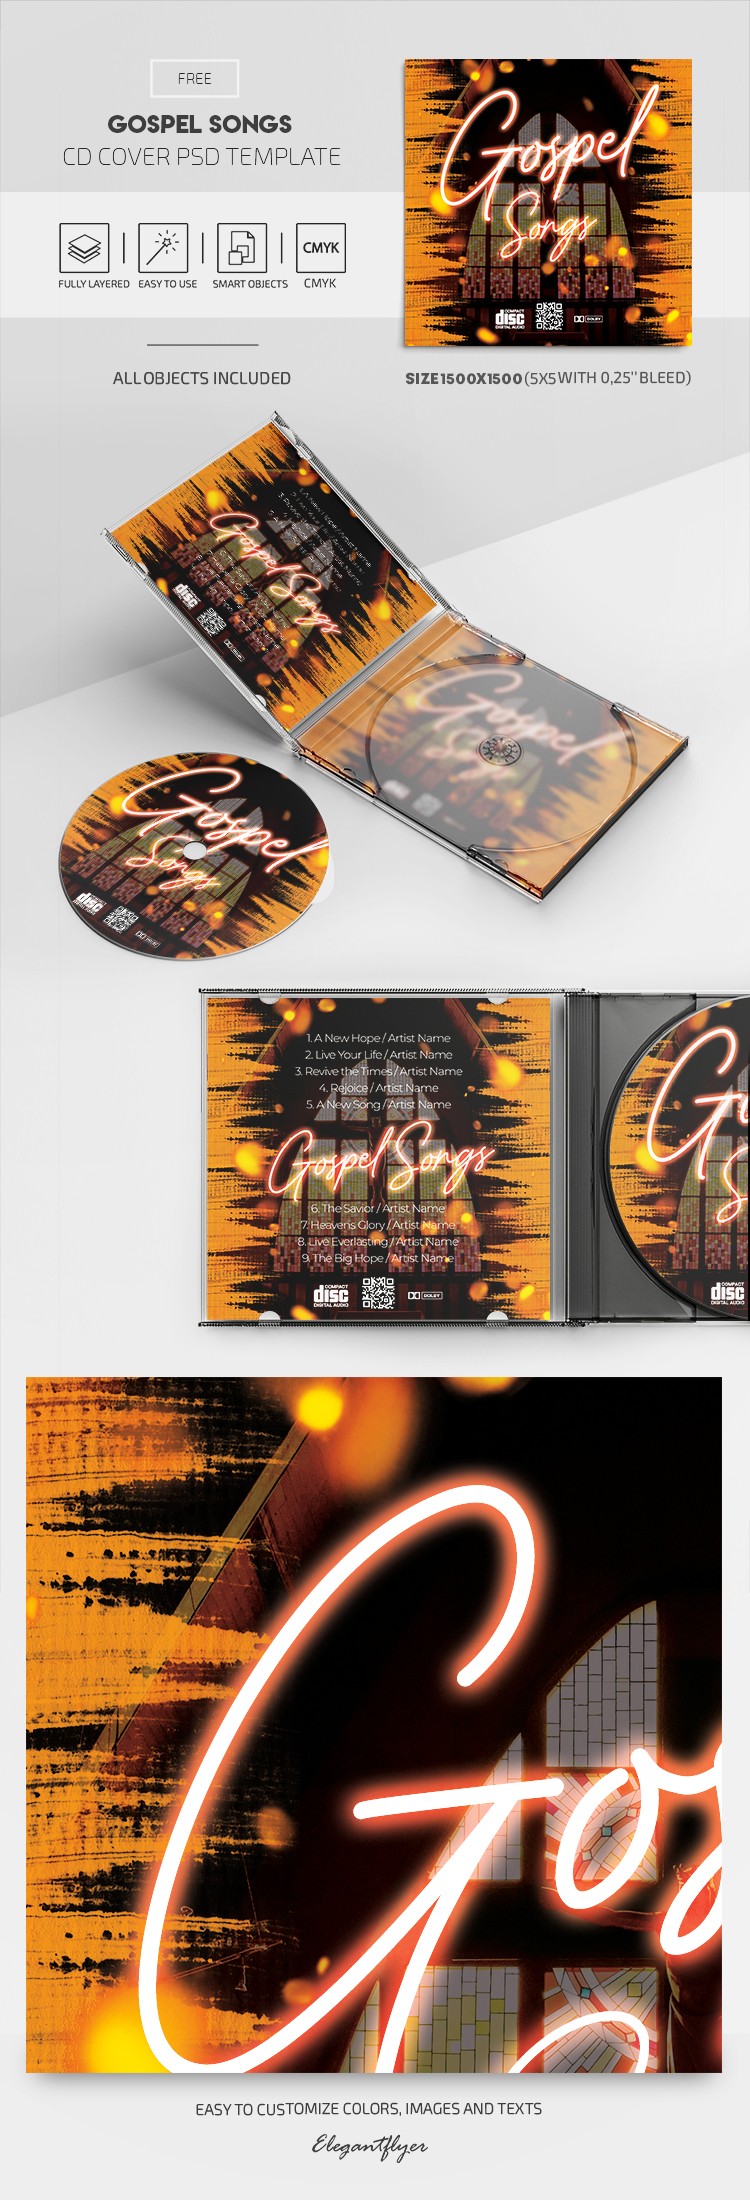 Capa do CD de Músicas Gospel by ElegantFlyer